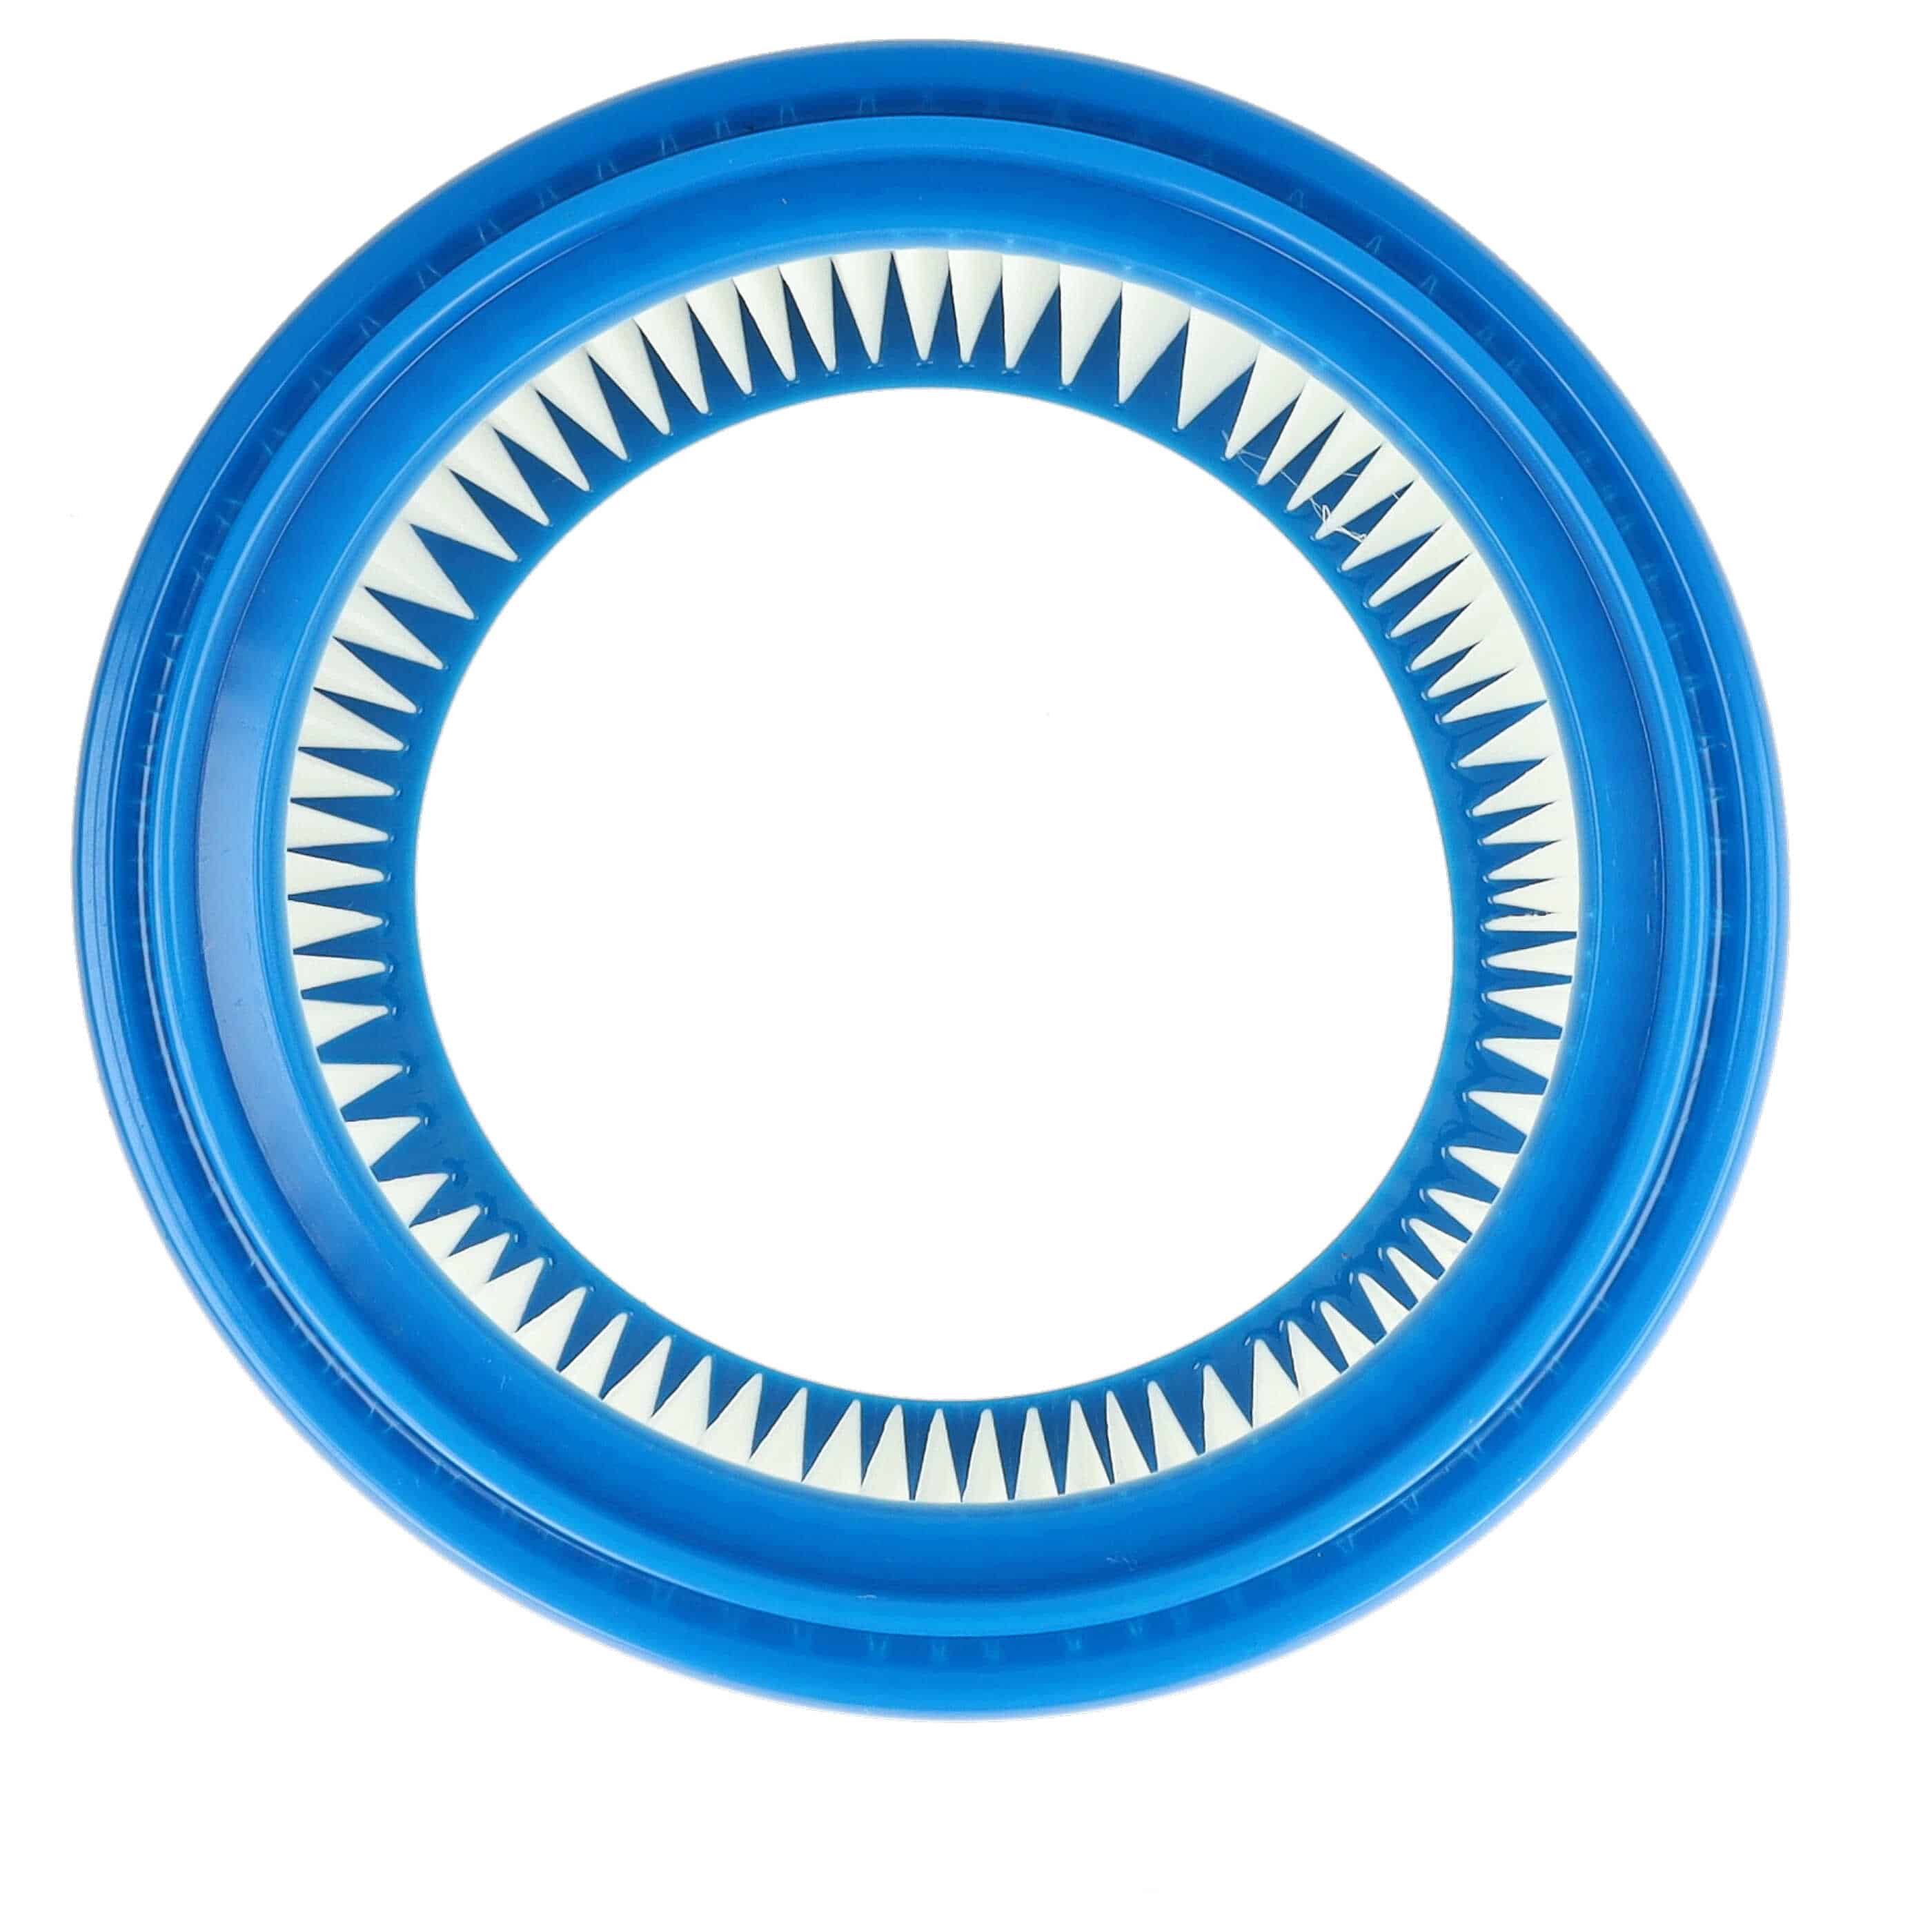 10x Filtro sostituisce Bosch 2607432024 per aspirapolvere - filtro rotondo, bianco / blu